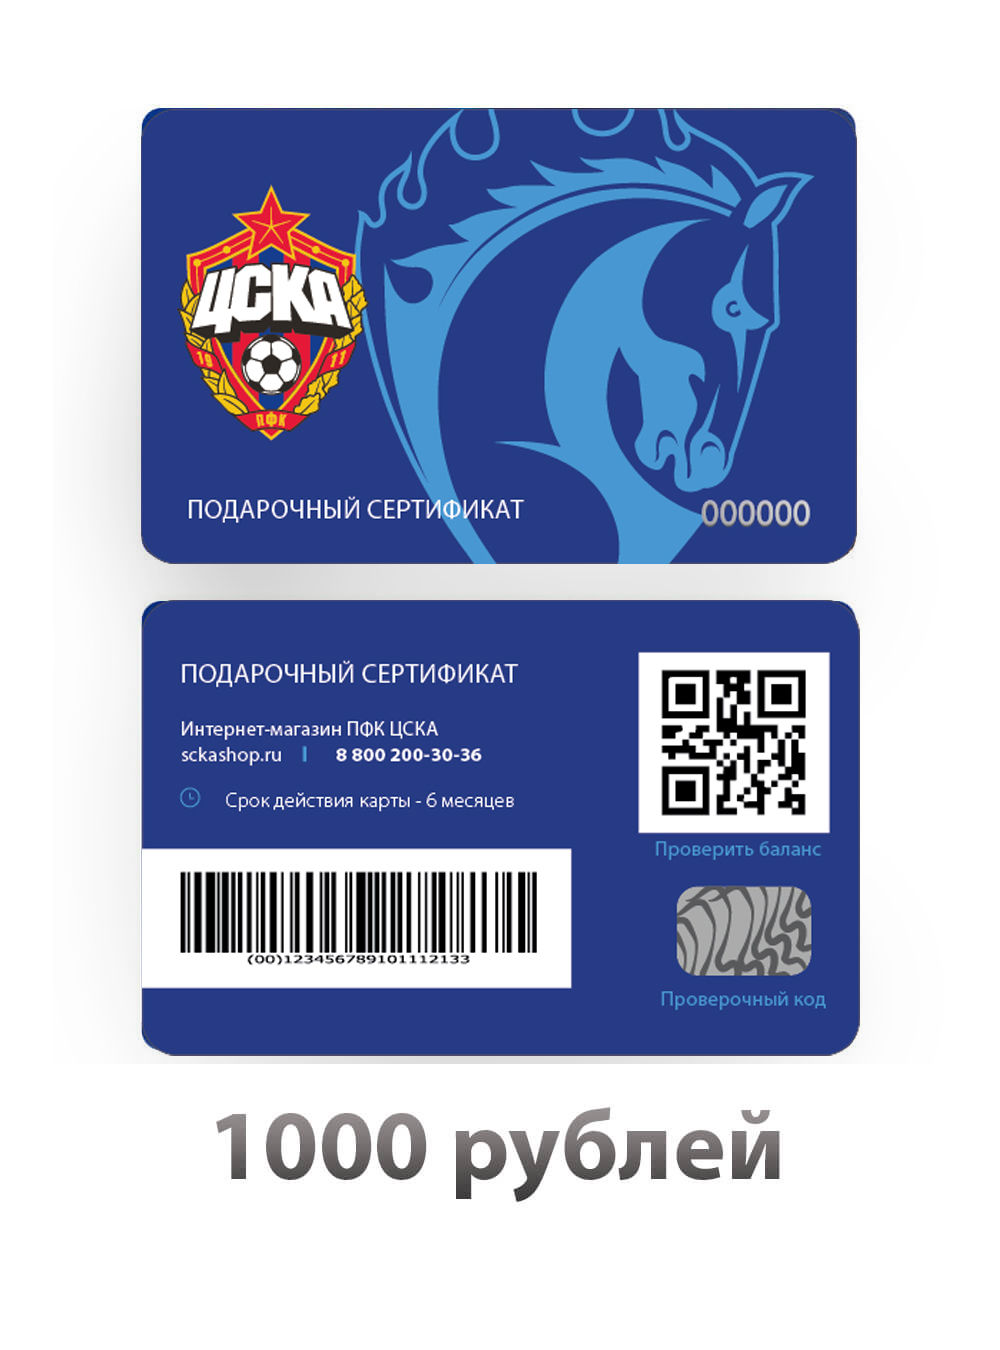 Подарочный сертификат на 1000 рублей (Электронный сертификат на 1000 рублей) от Cskashop